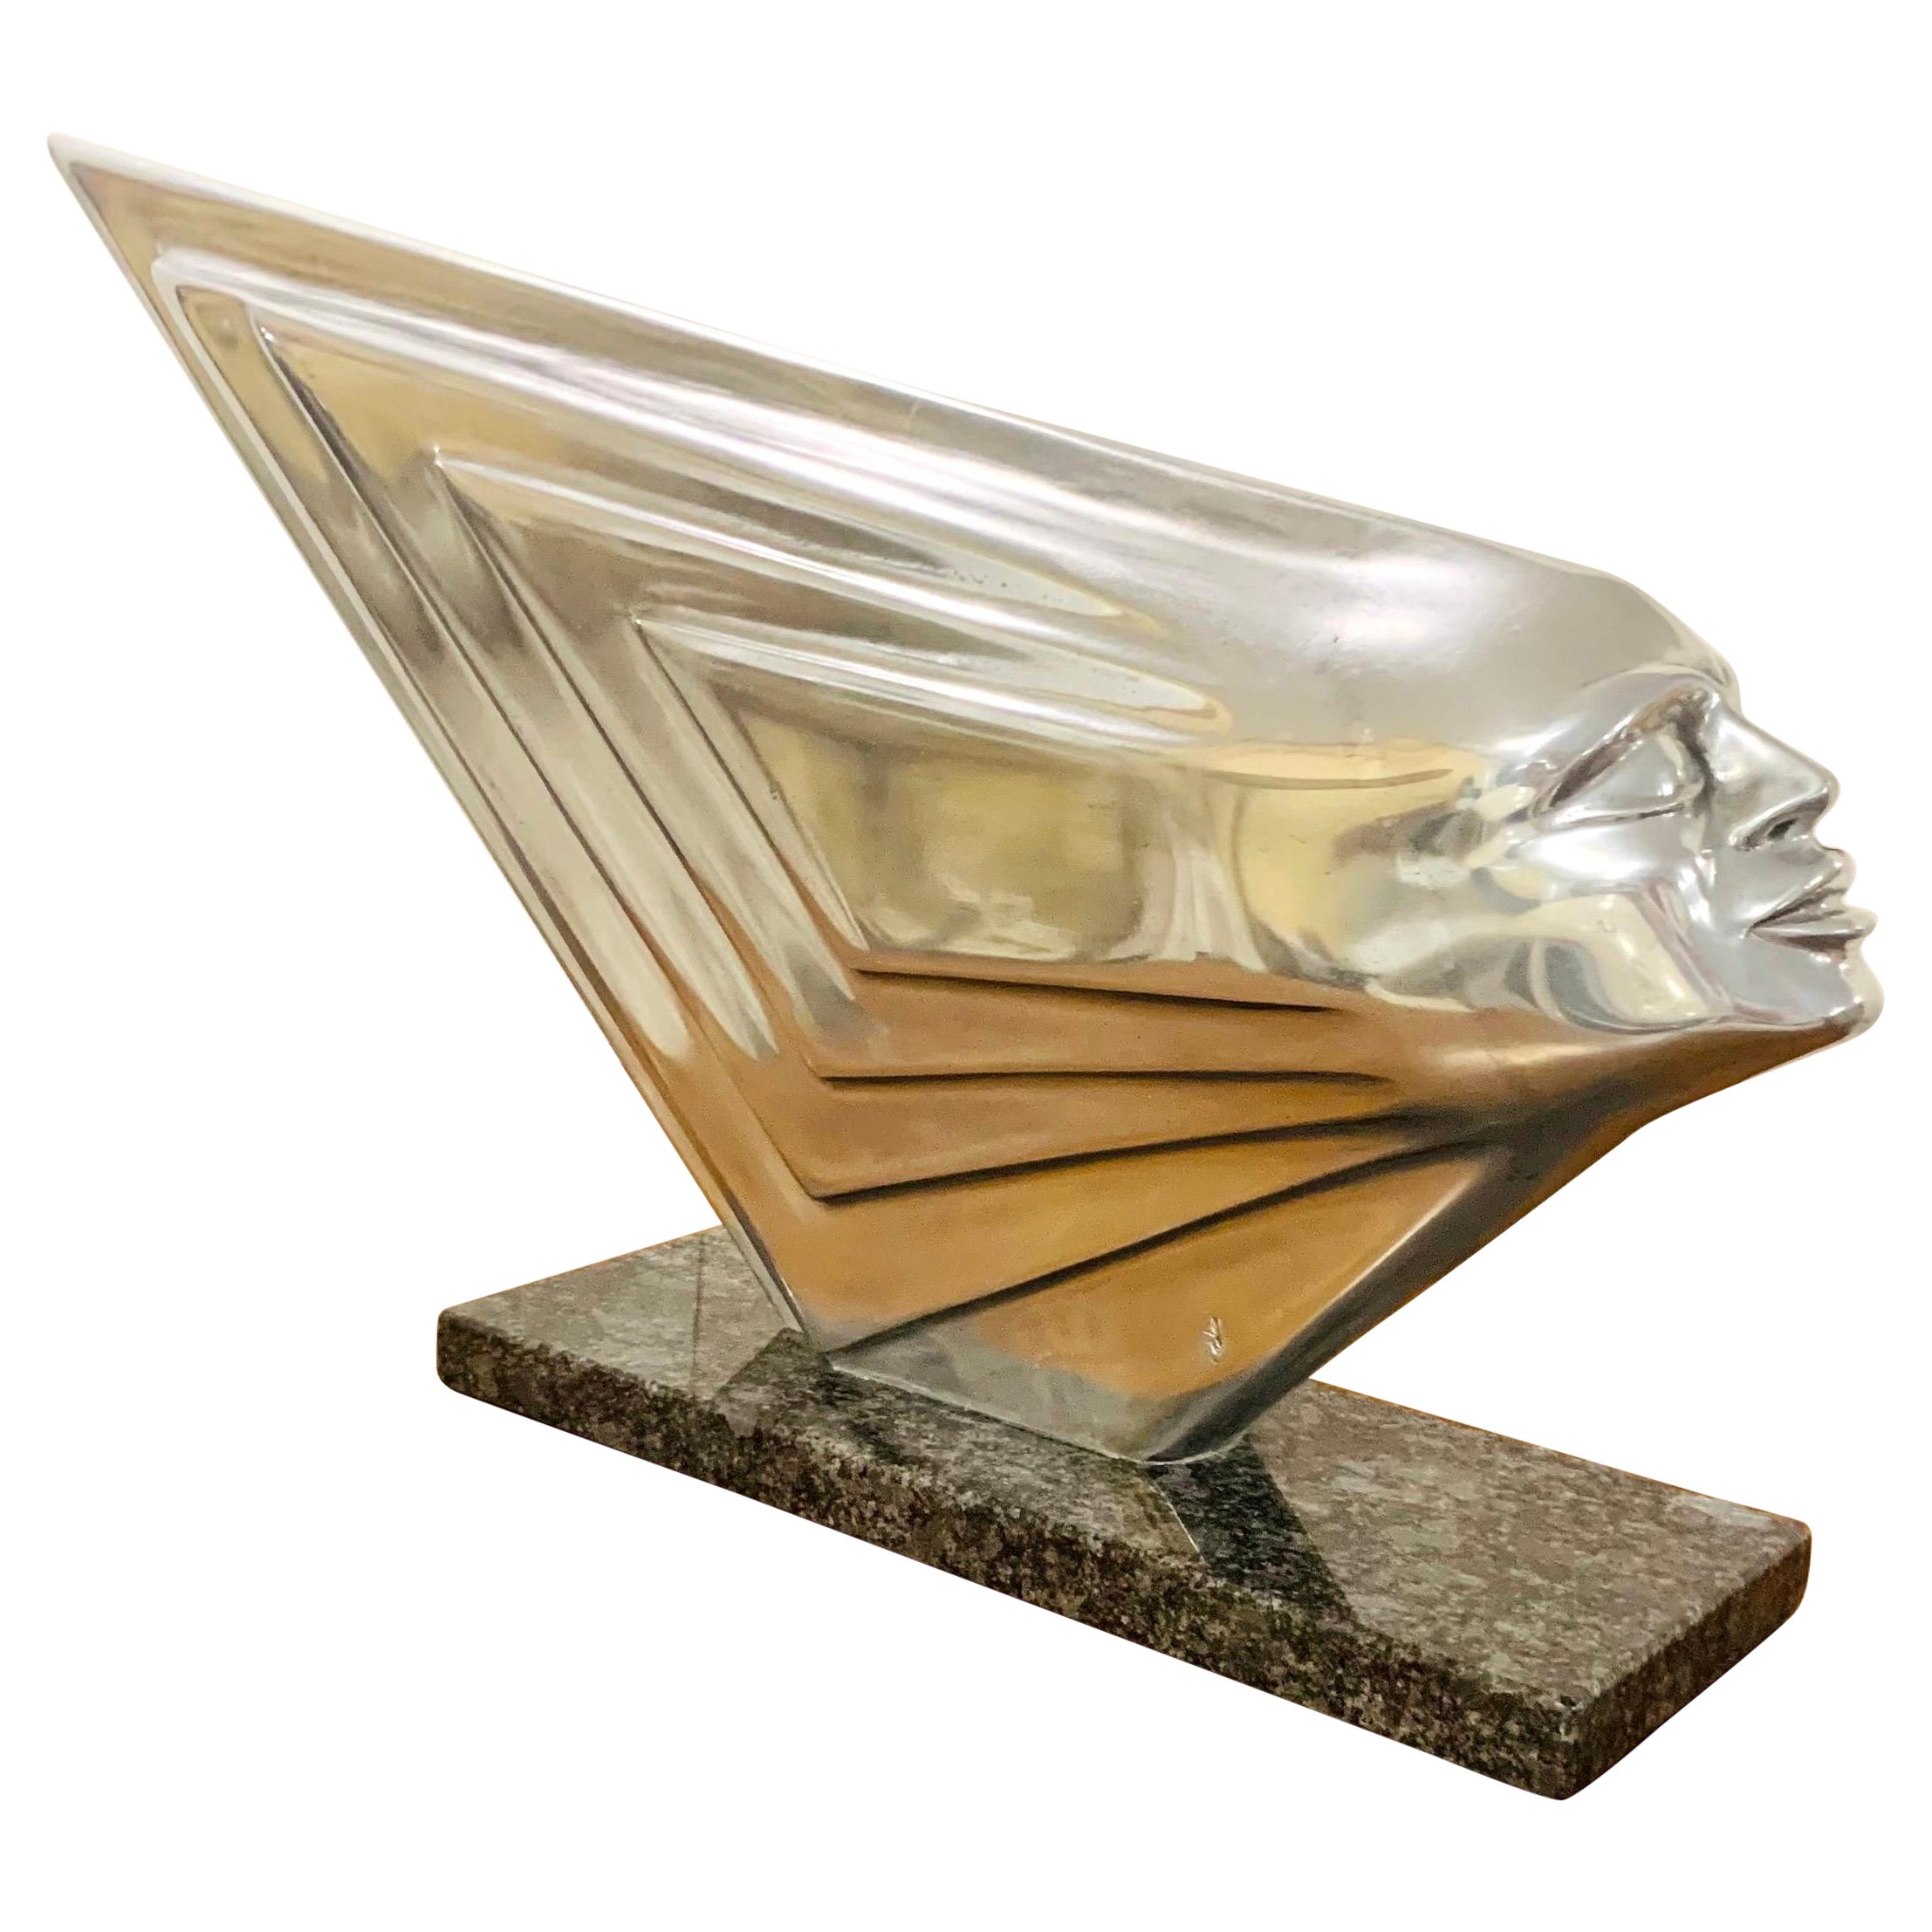 Rare Lee Duran Modern Art Deco Siren Sculpture Chrome Goddess Series 1 of 5 Made